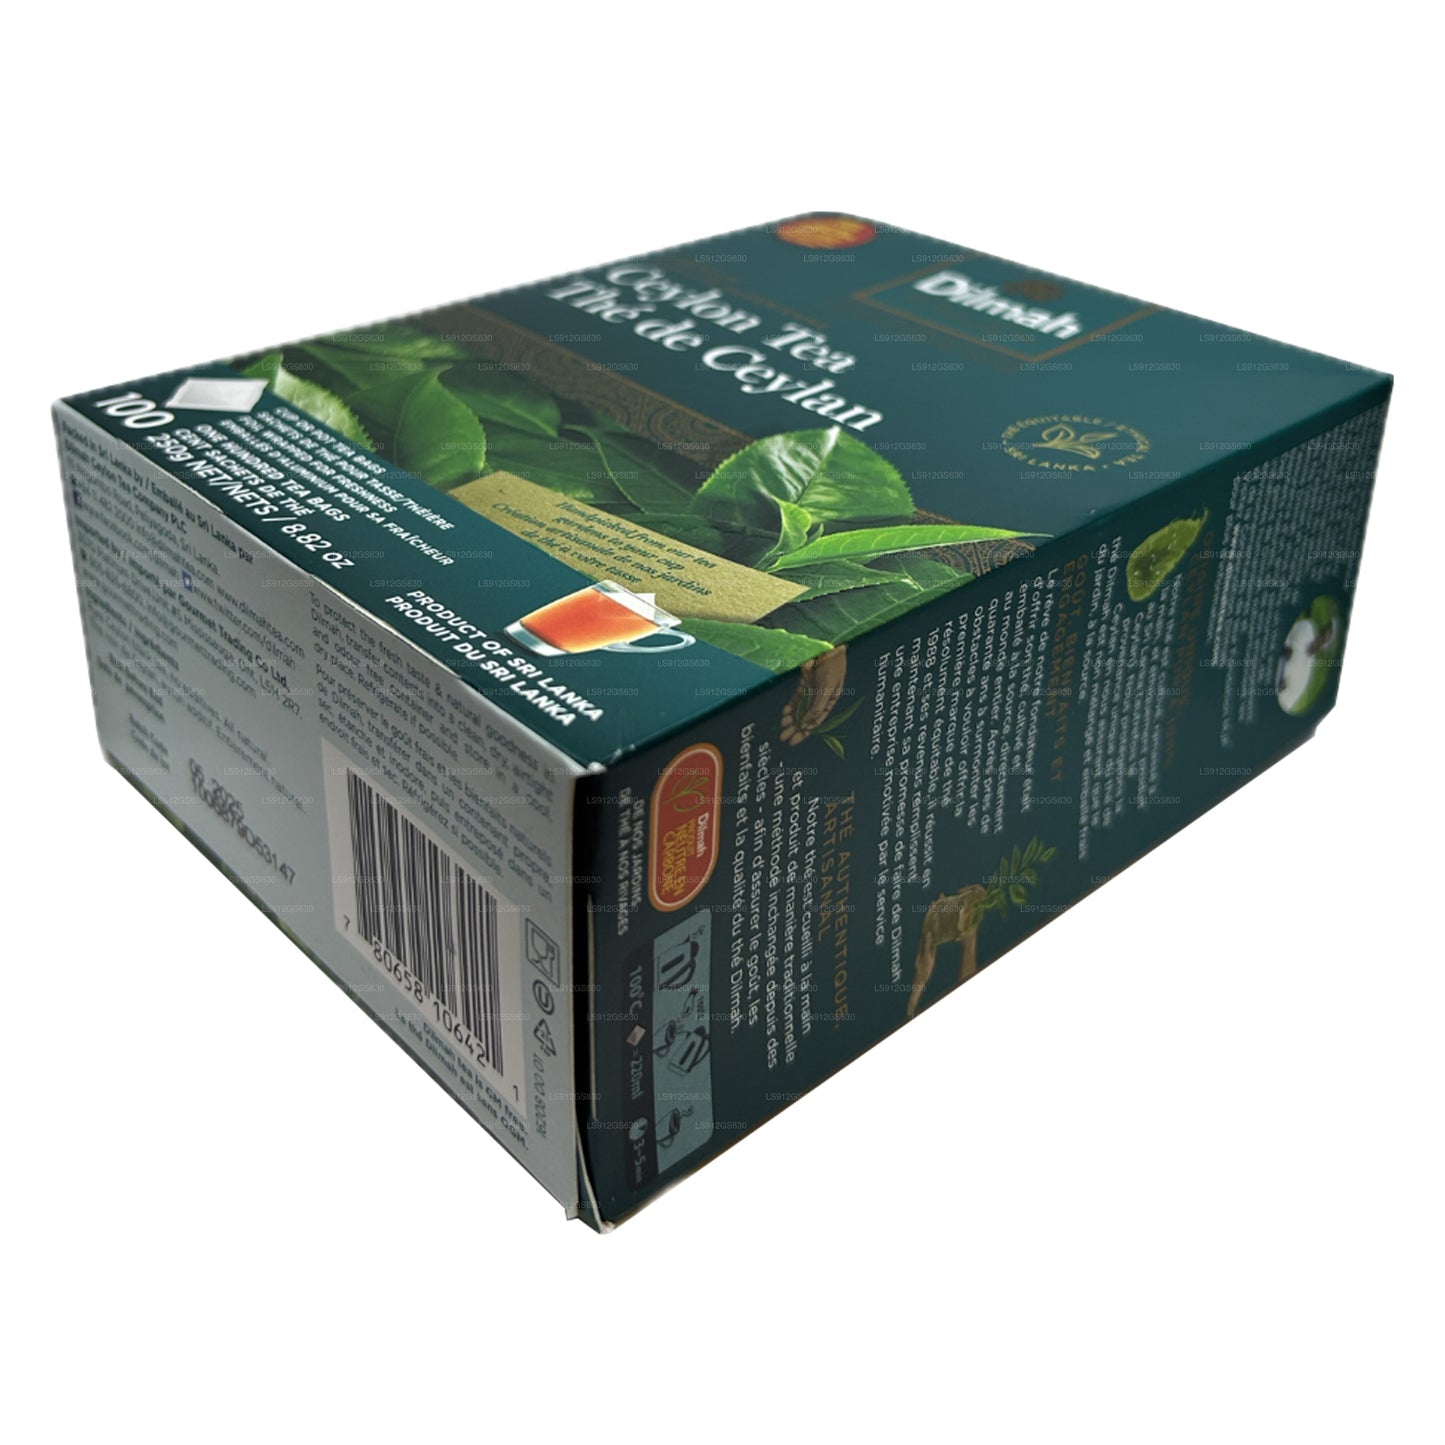 Dilmah Premium 锡兰茶 (250 g) 100 个无标签茶包